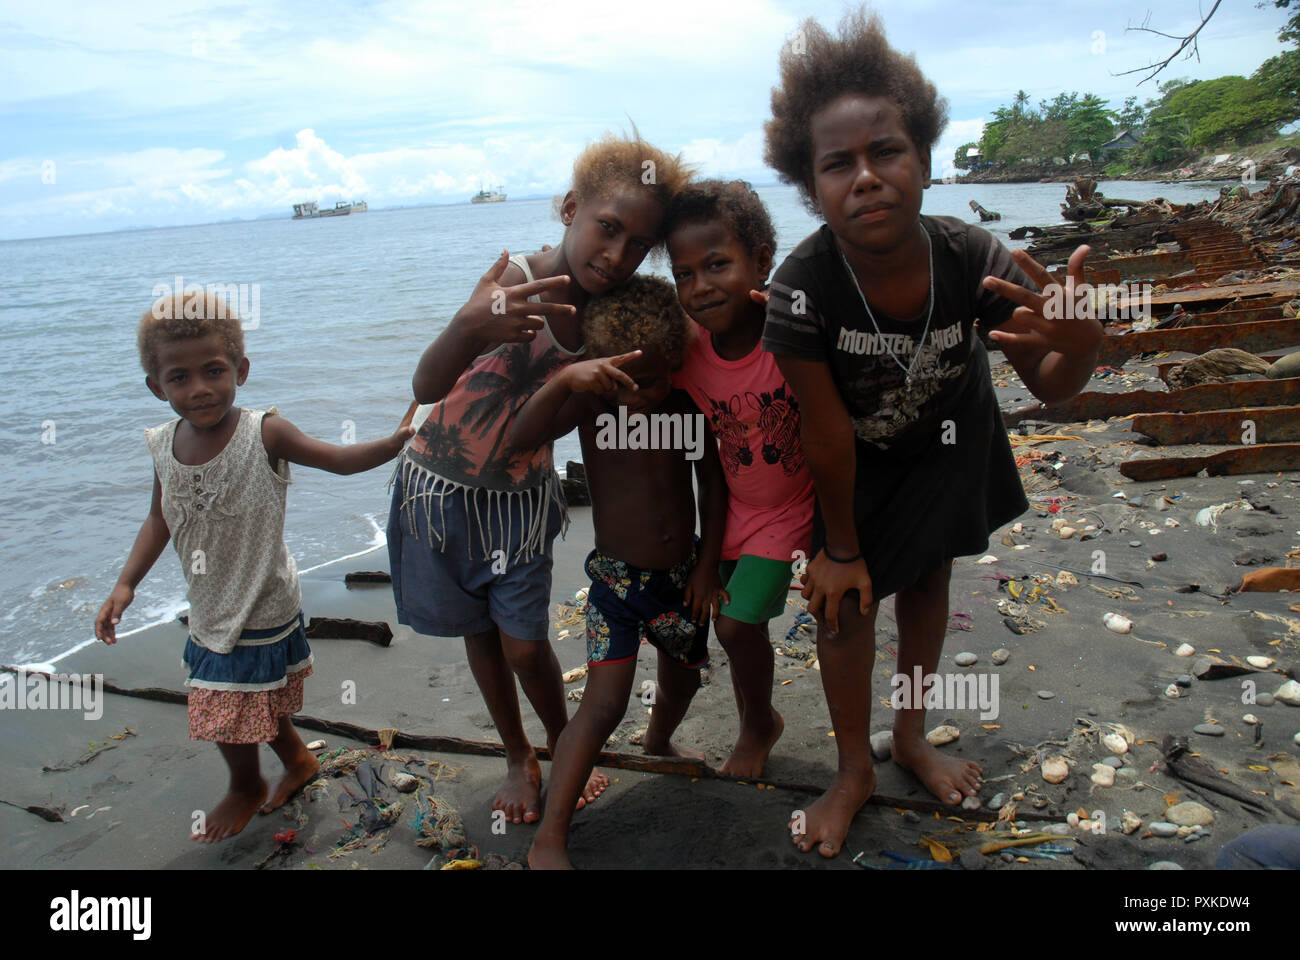 Groupe d'enfants sur plage jonchée, Honiara, Îles Salomon Photo Stock -  Alamy